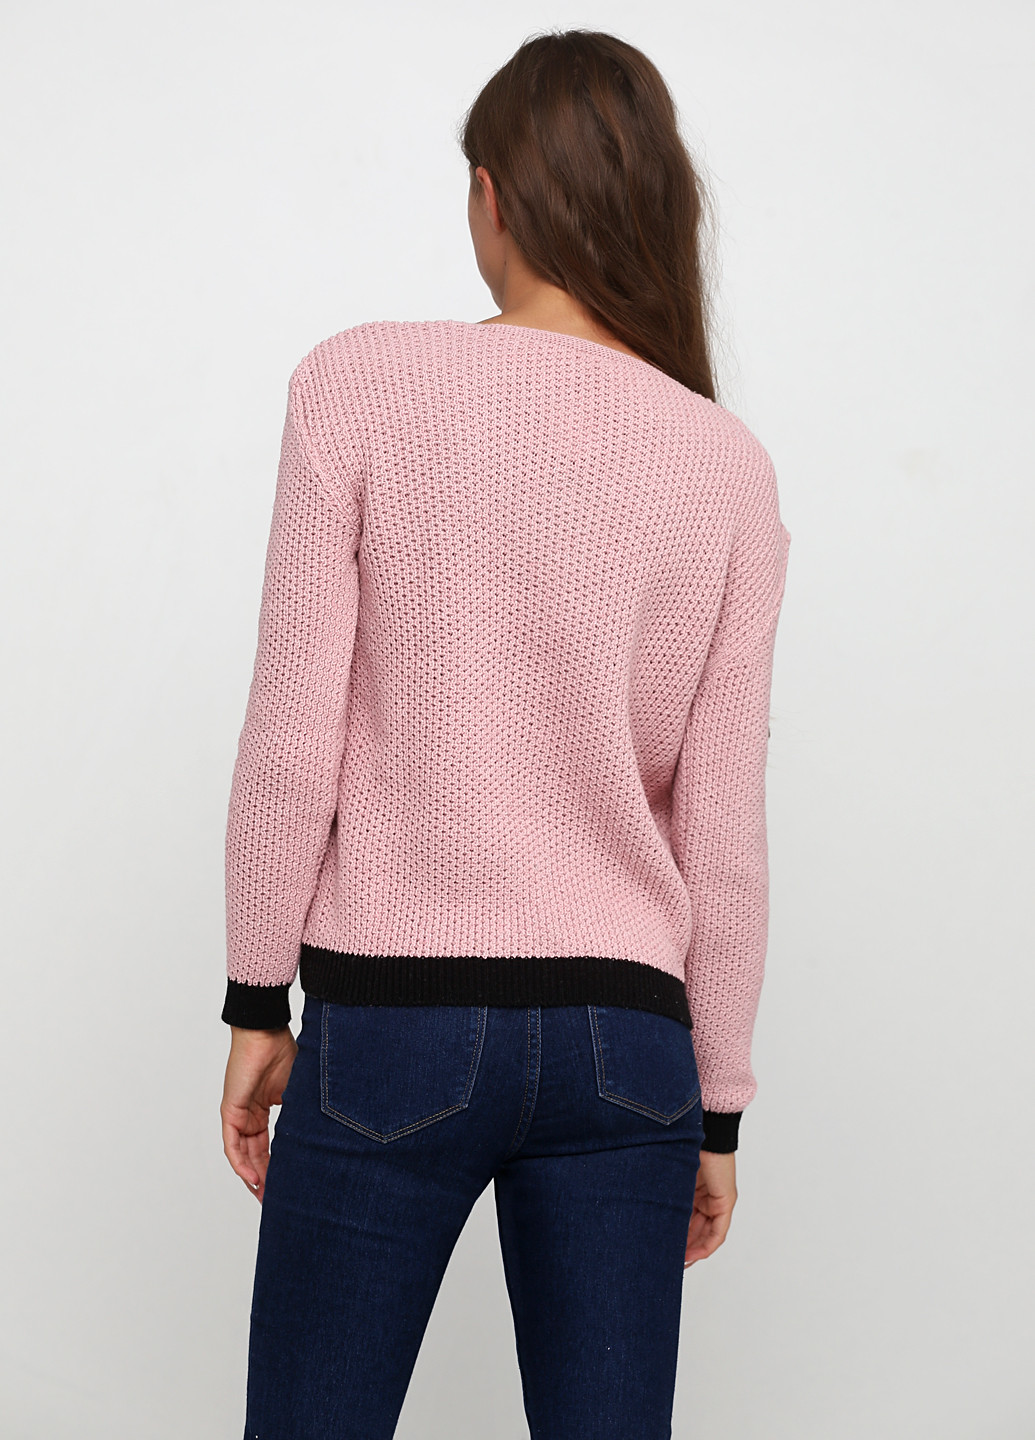 Розовый демисезонный пуловер пуловер Edda